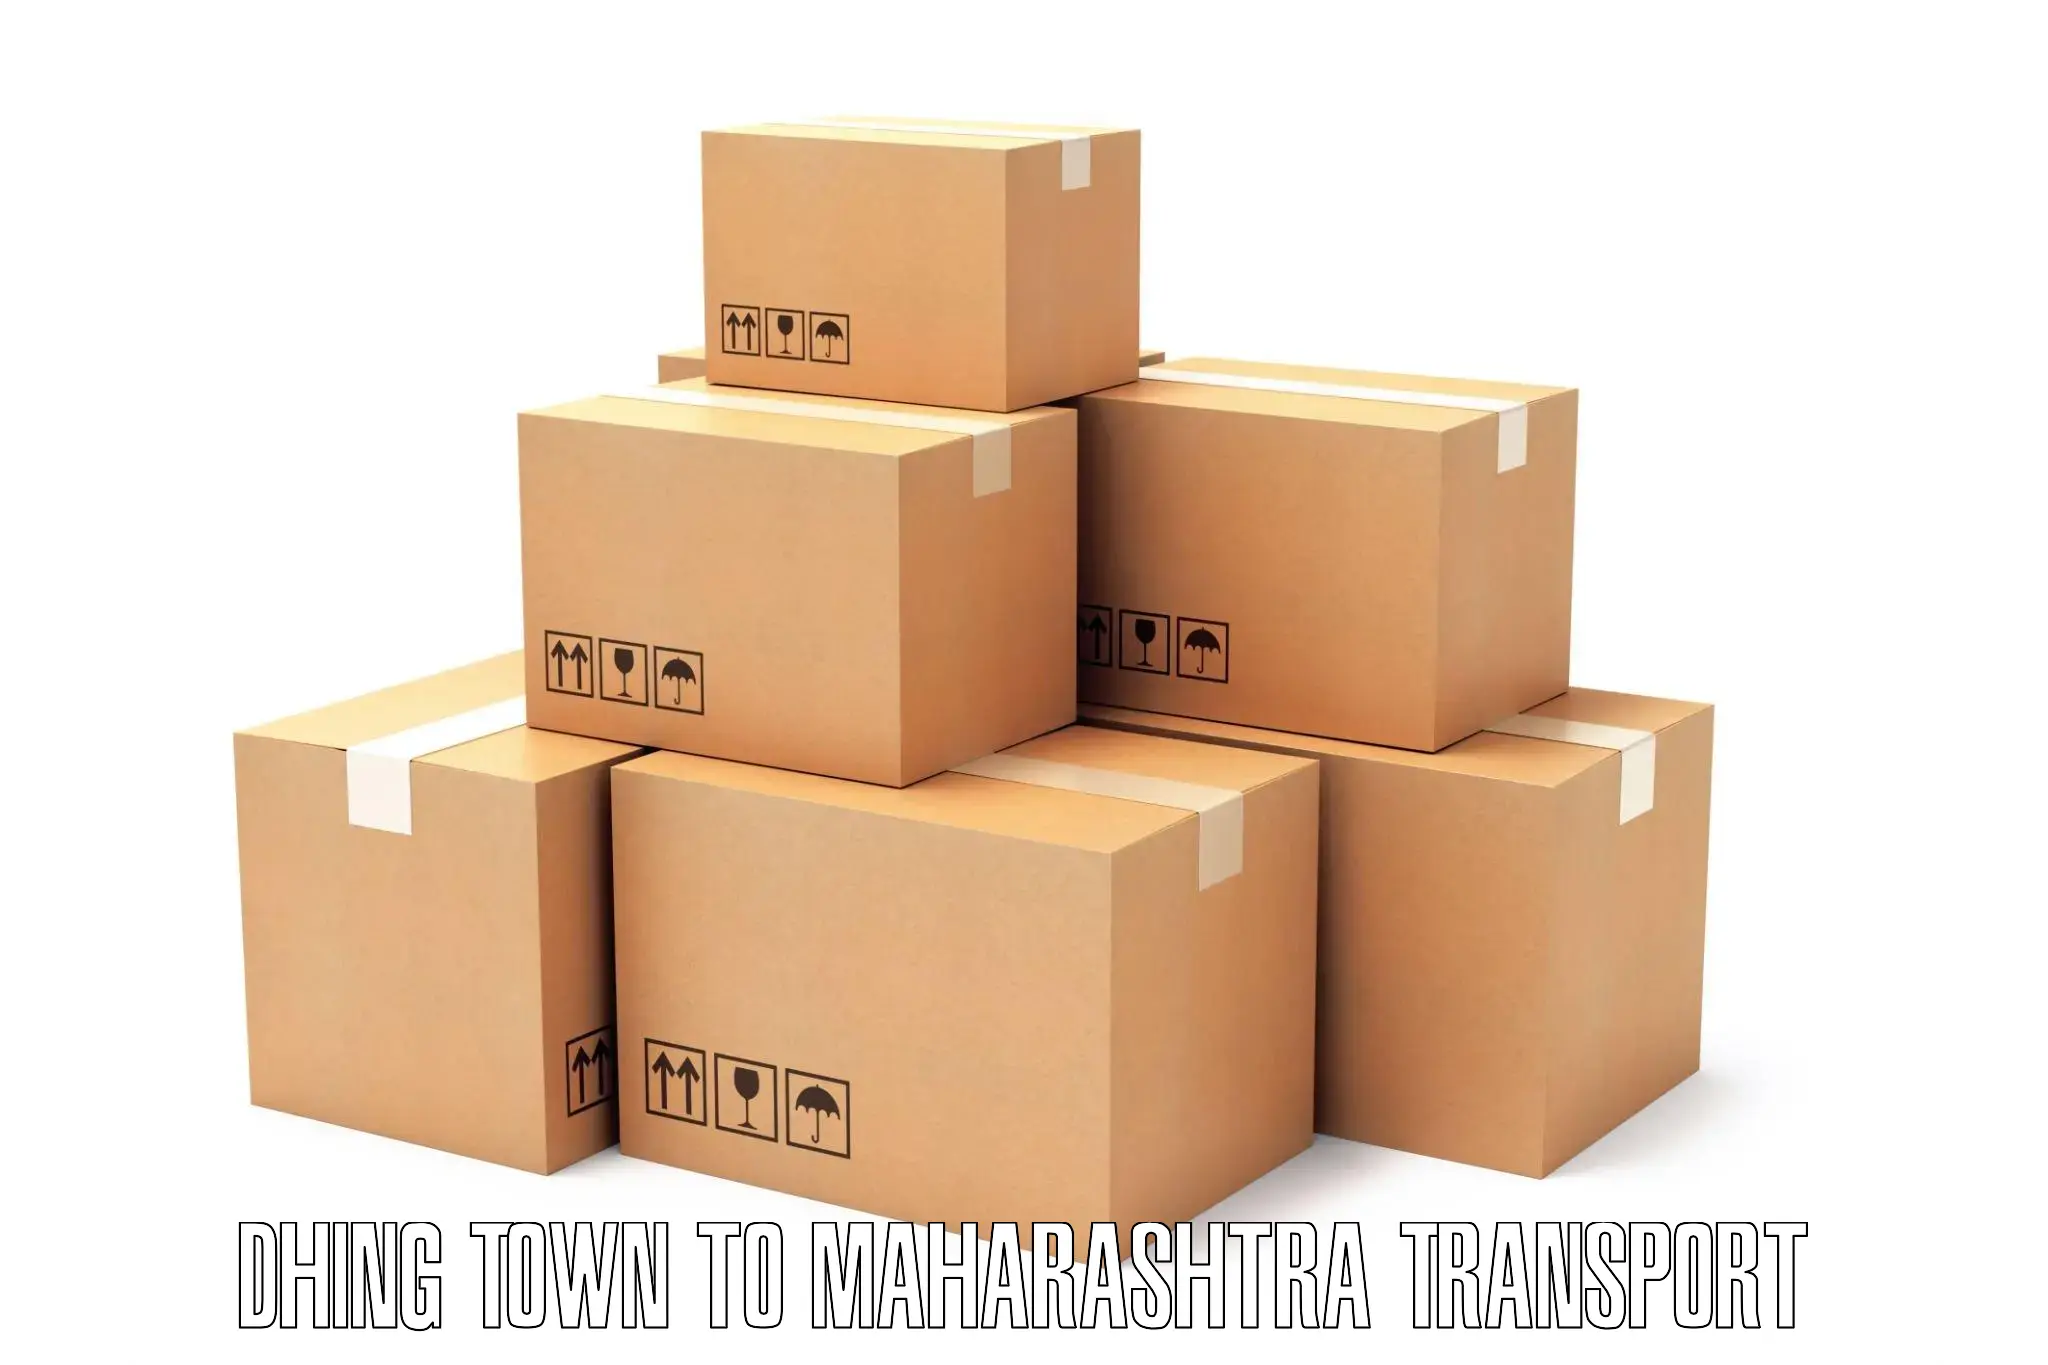 Lorry transport service Dhing Town to Waranga Phata